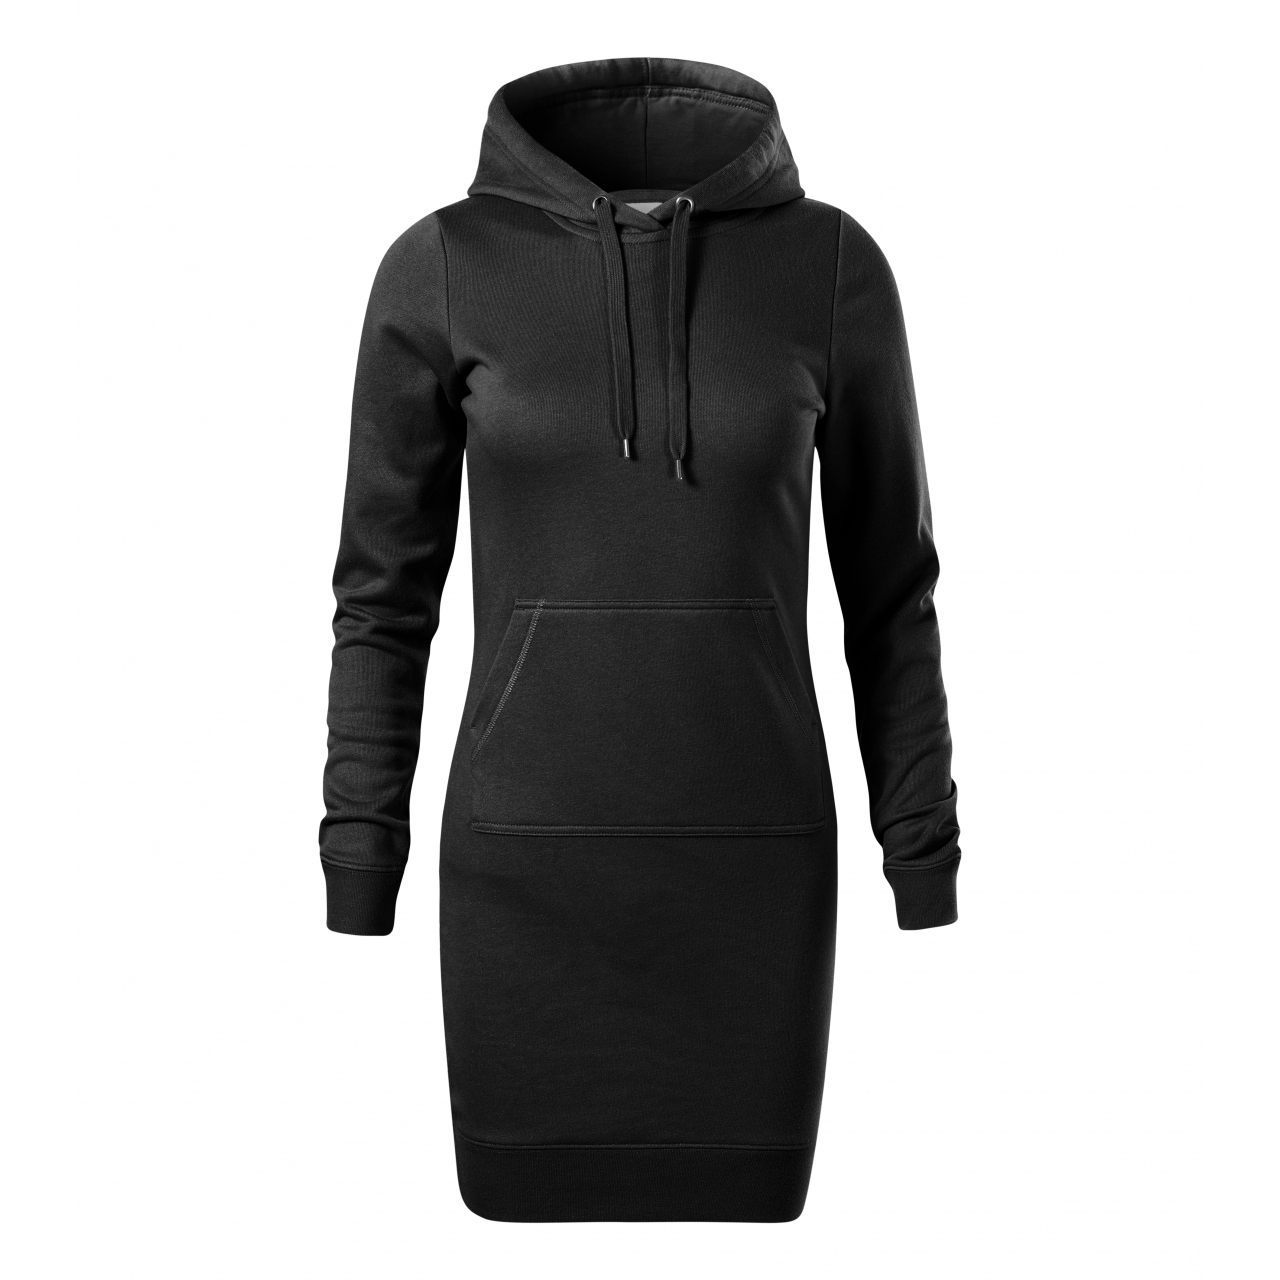 Šaty dámské Malfini Snap - černé, XL